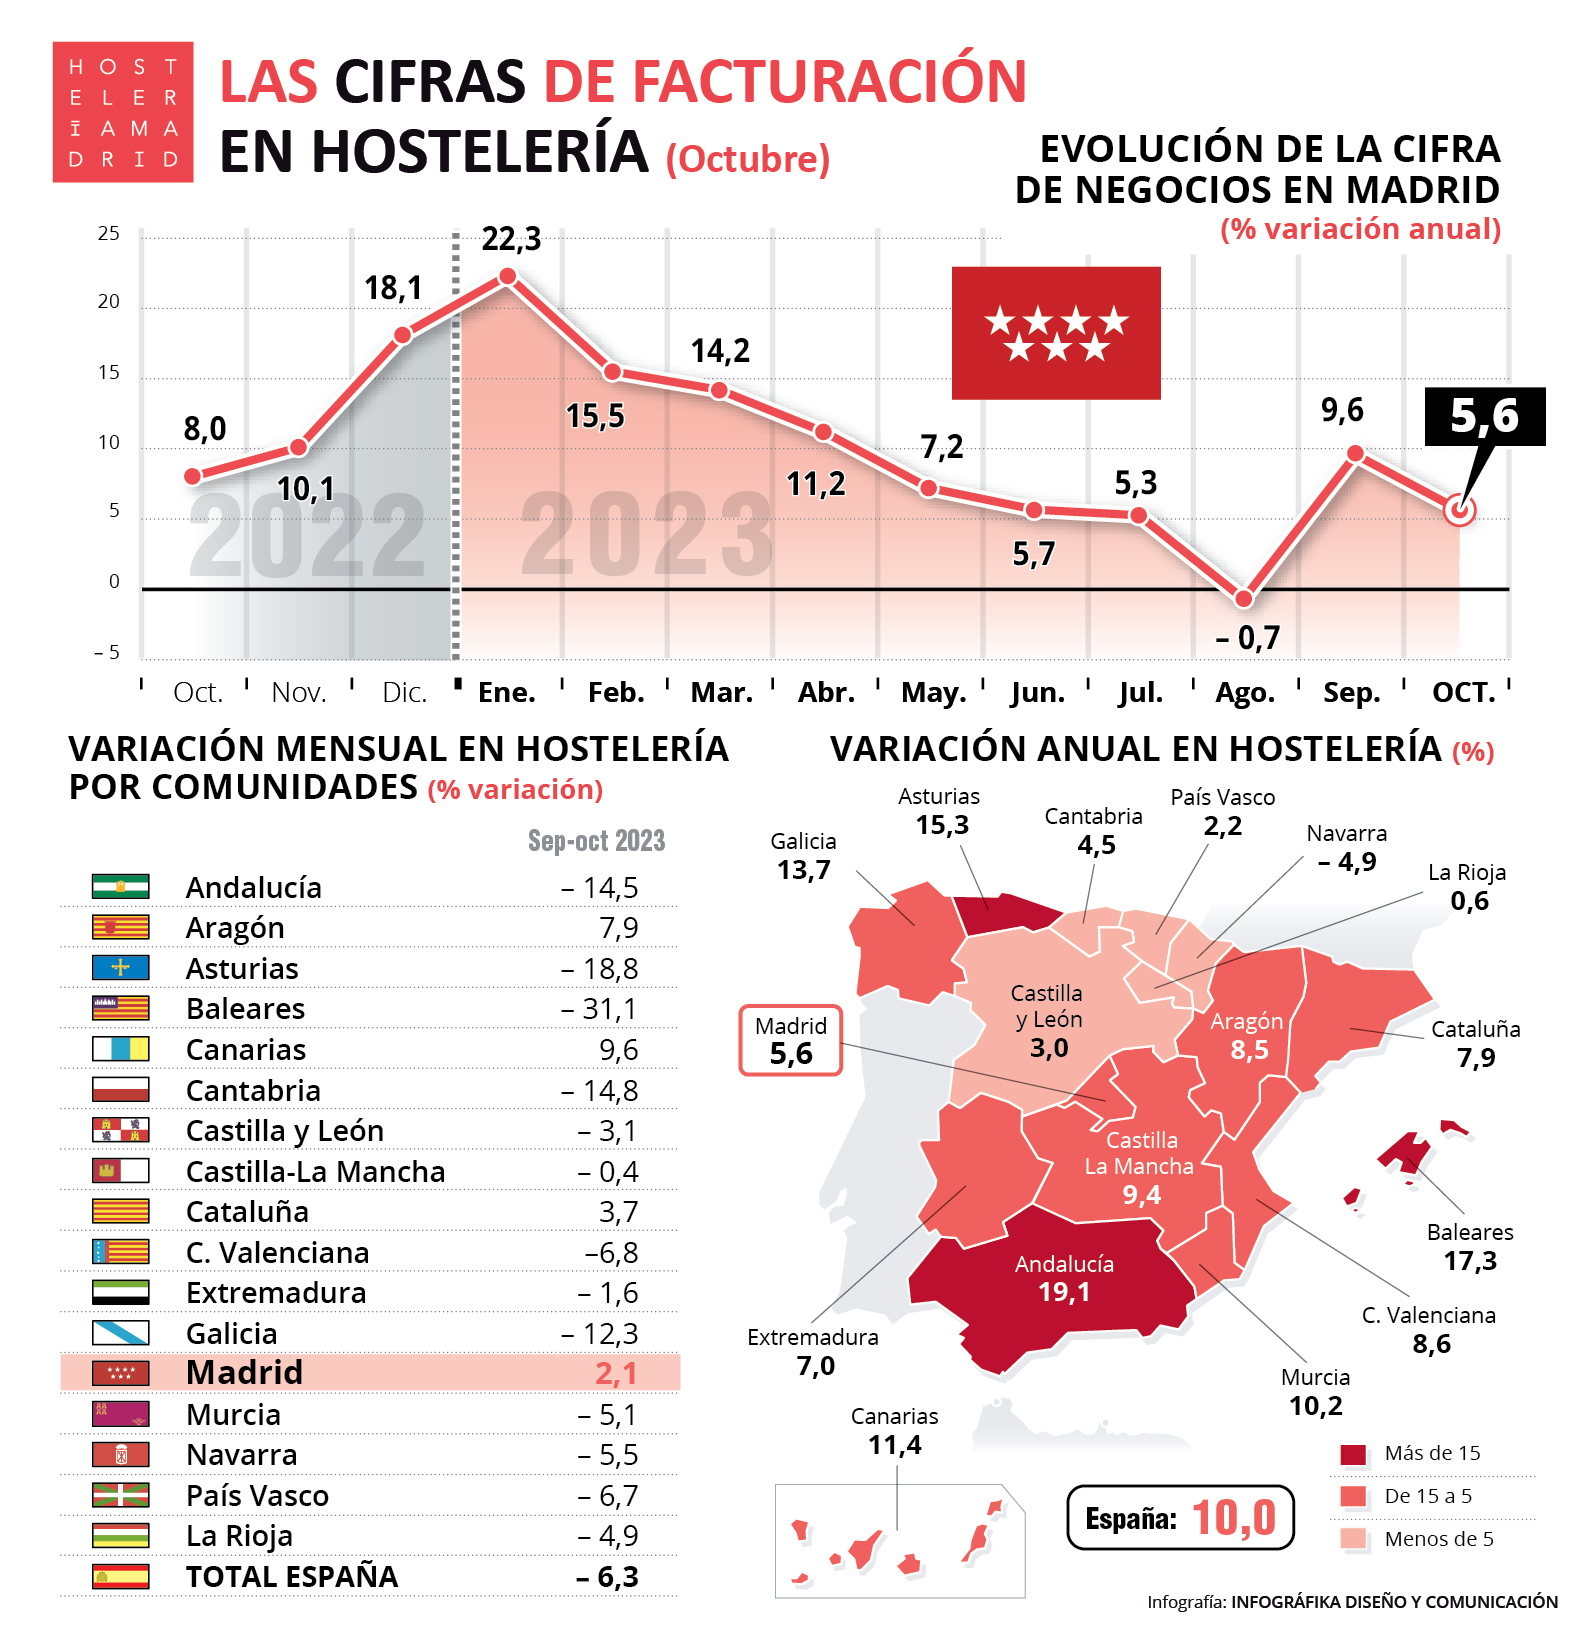 La hostelería de Madrid facturó en octubre un 5,6% más que el año anterior - La Viña